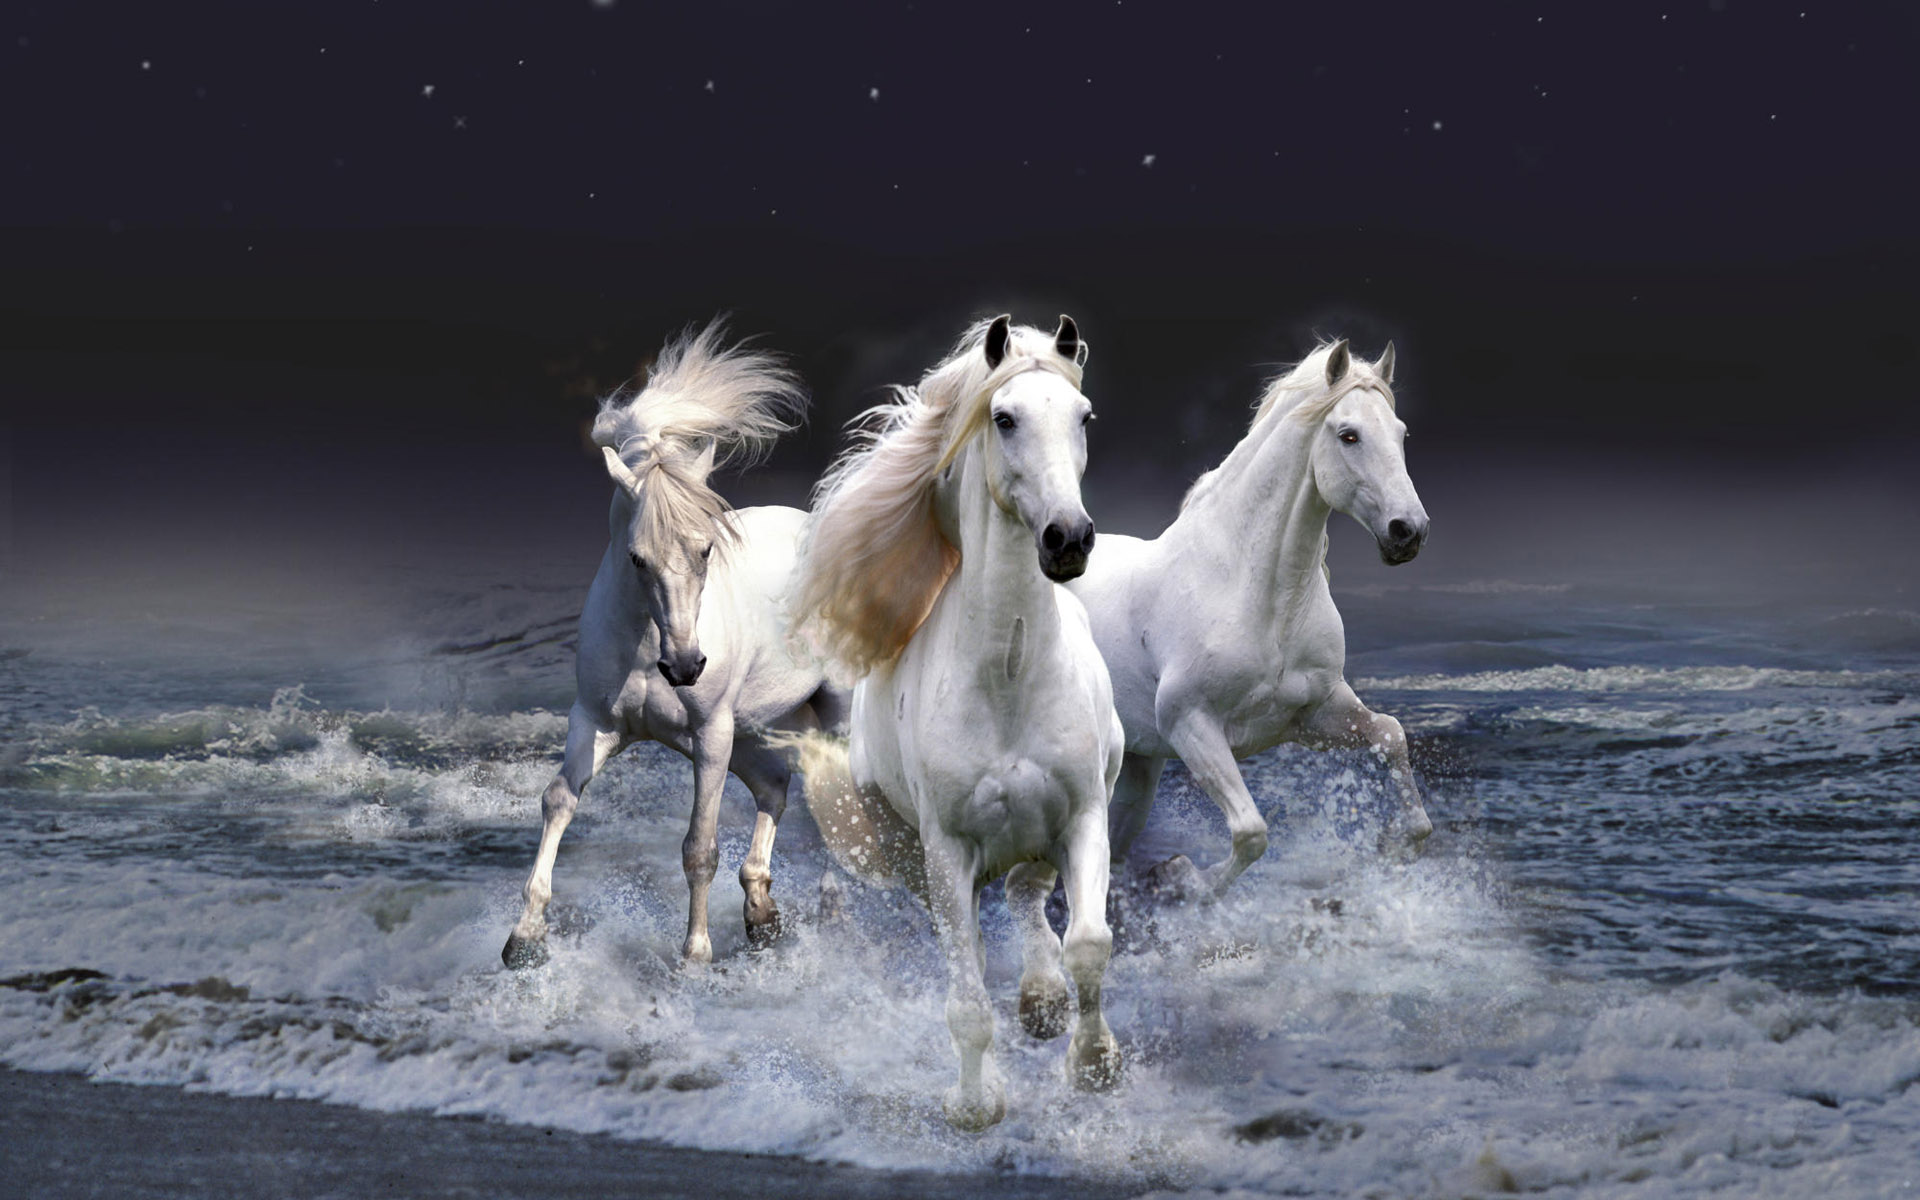 Horses On The Beach HD Wallpaper For Desktop